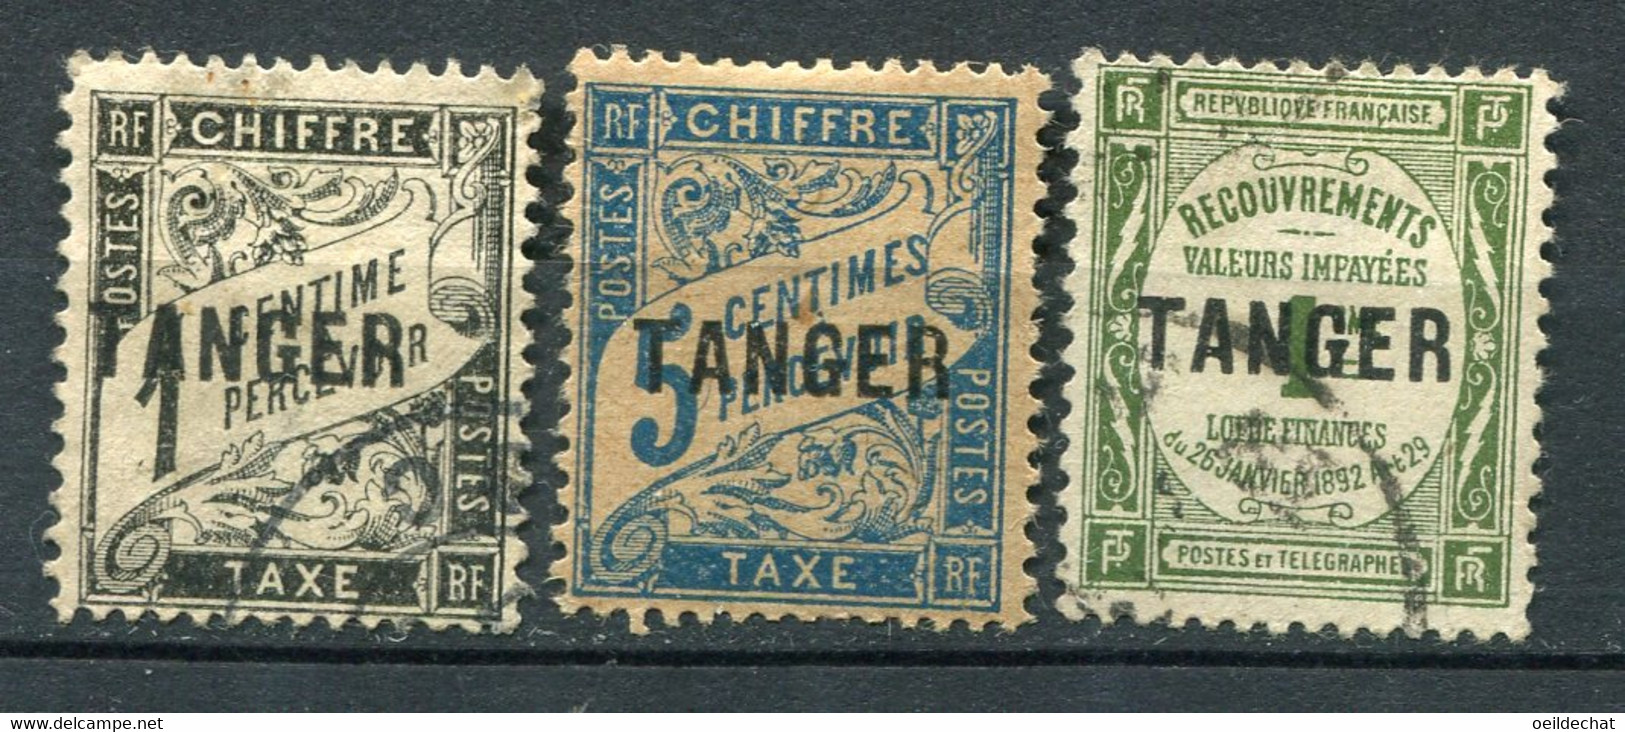 22435 MAROC Taxe 35/6, 42 °/* Timbres-taxe De France Surchargés Tanger  1918  B/TB - Timbres-taxe